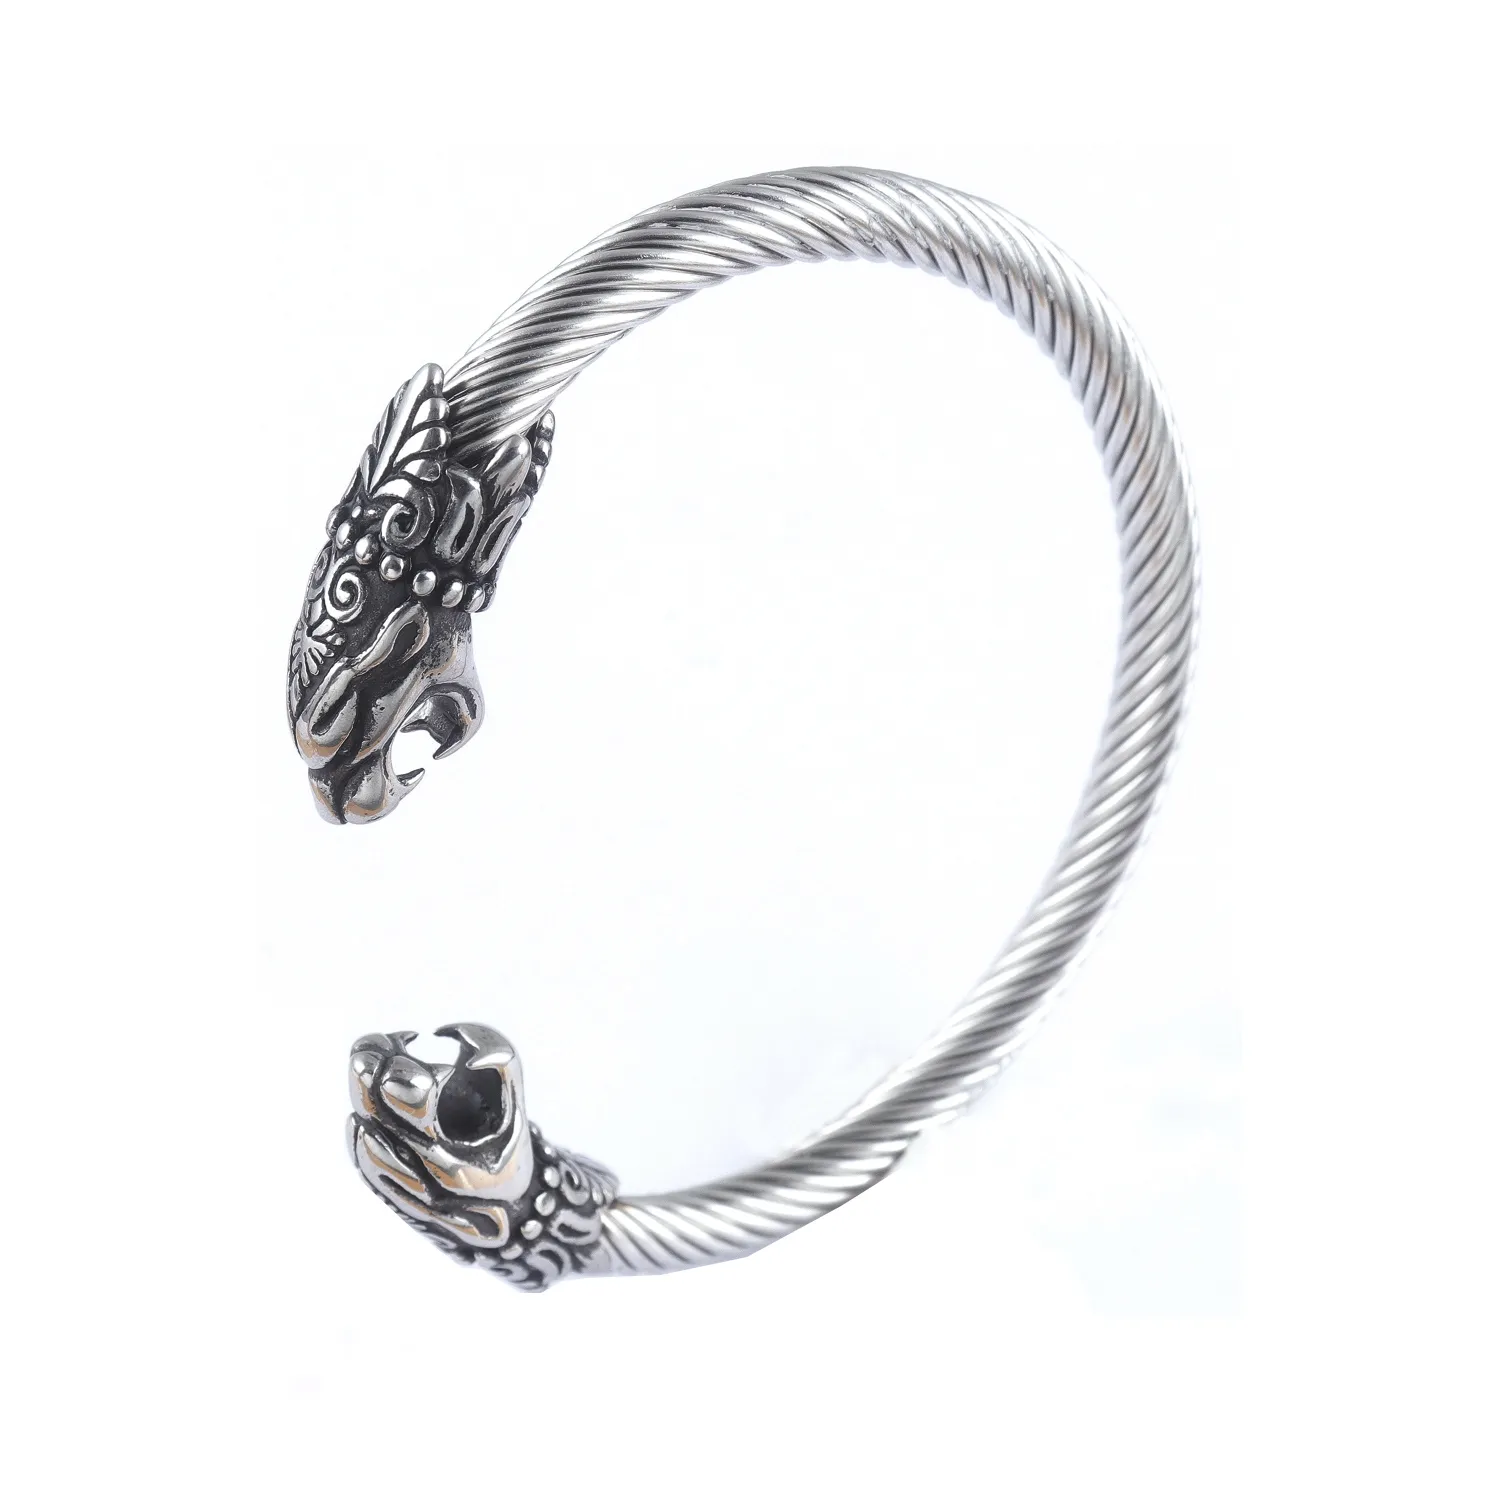 Bracelet en argent pour homme, bijou inspiré du film Viking, têtes de Dragon loup, câble torsadé, manchette ouverte et ajustable